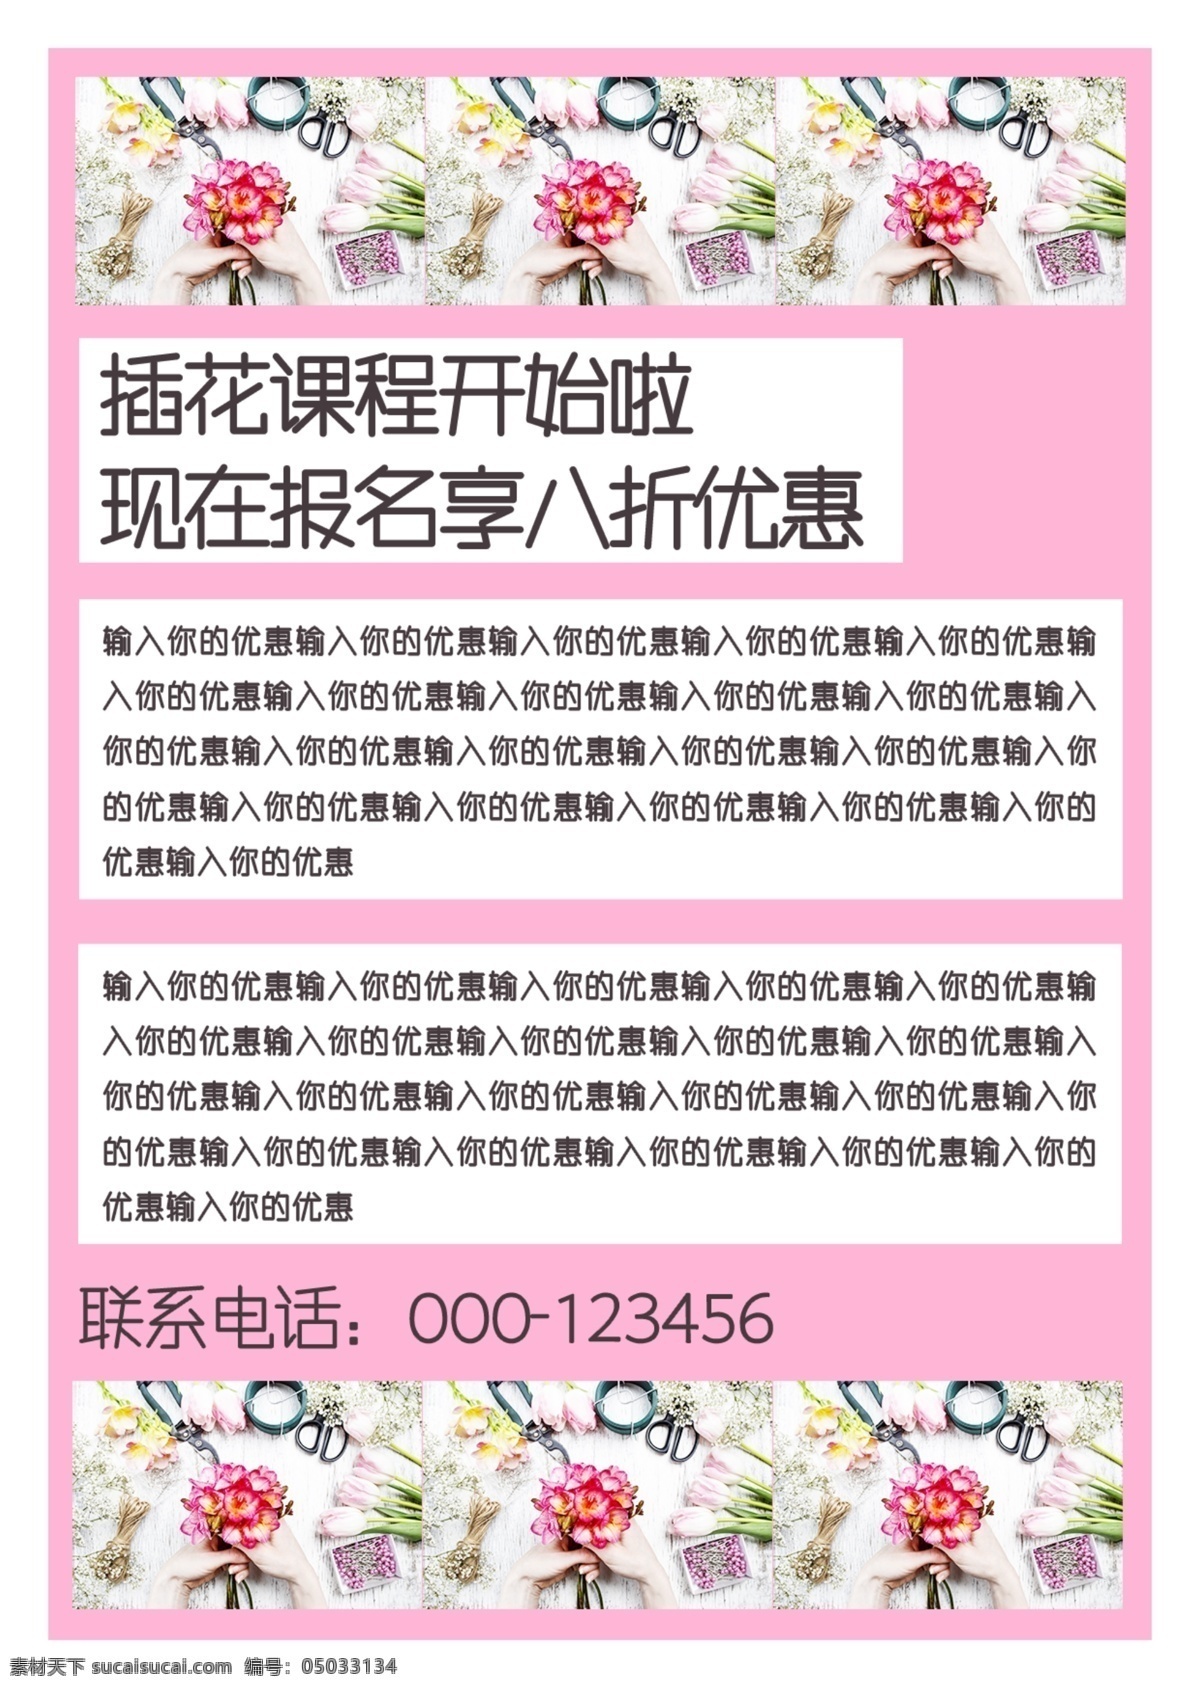 粉色 浪漫 清新 花艺培训 班 宣传单 简约 培训 模板 花艺 插花 艺术